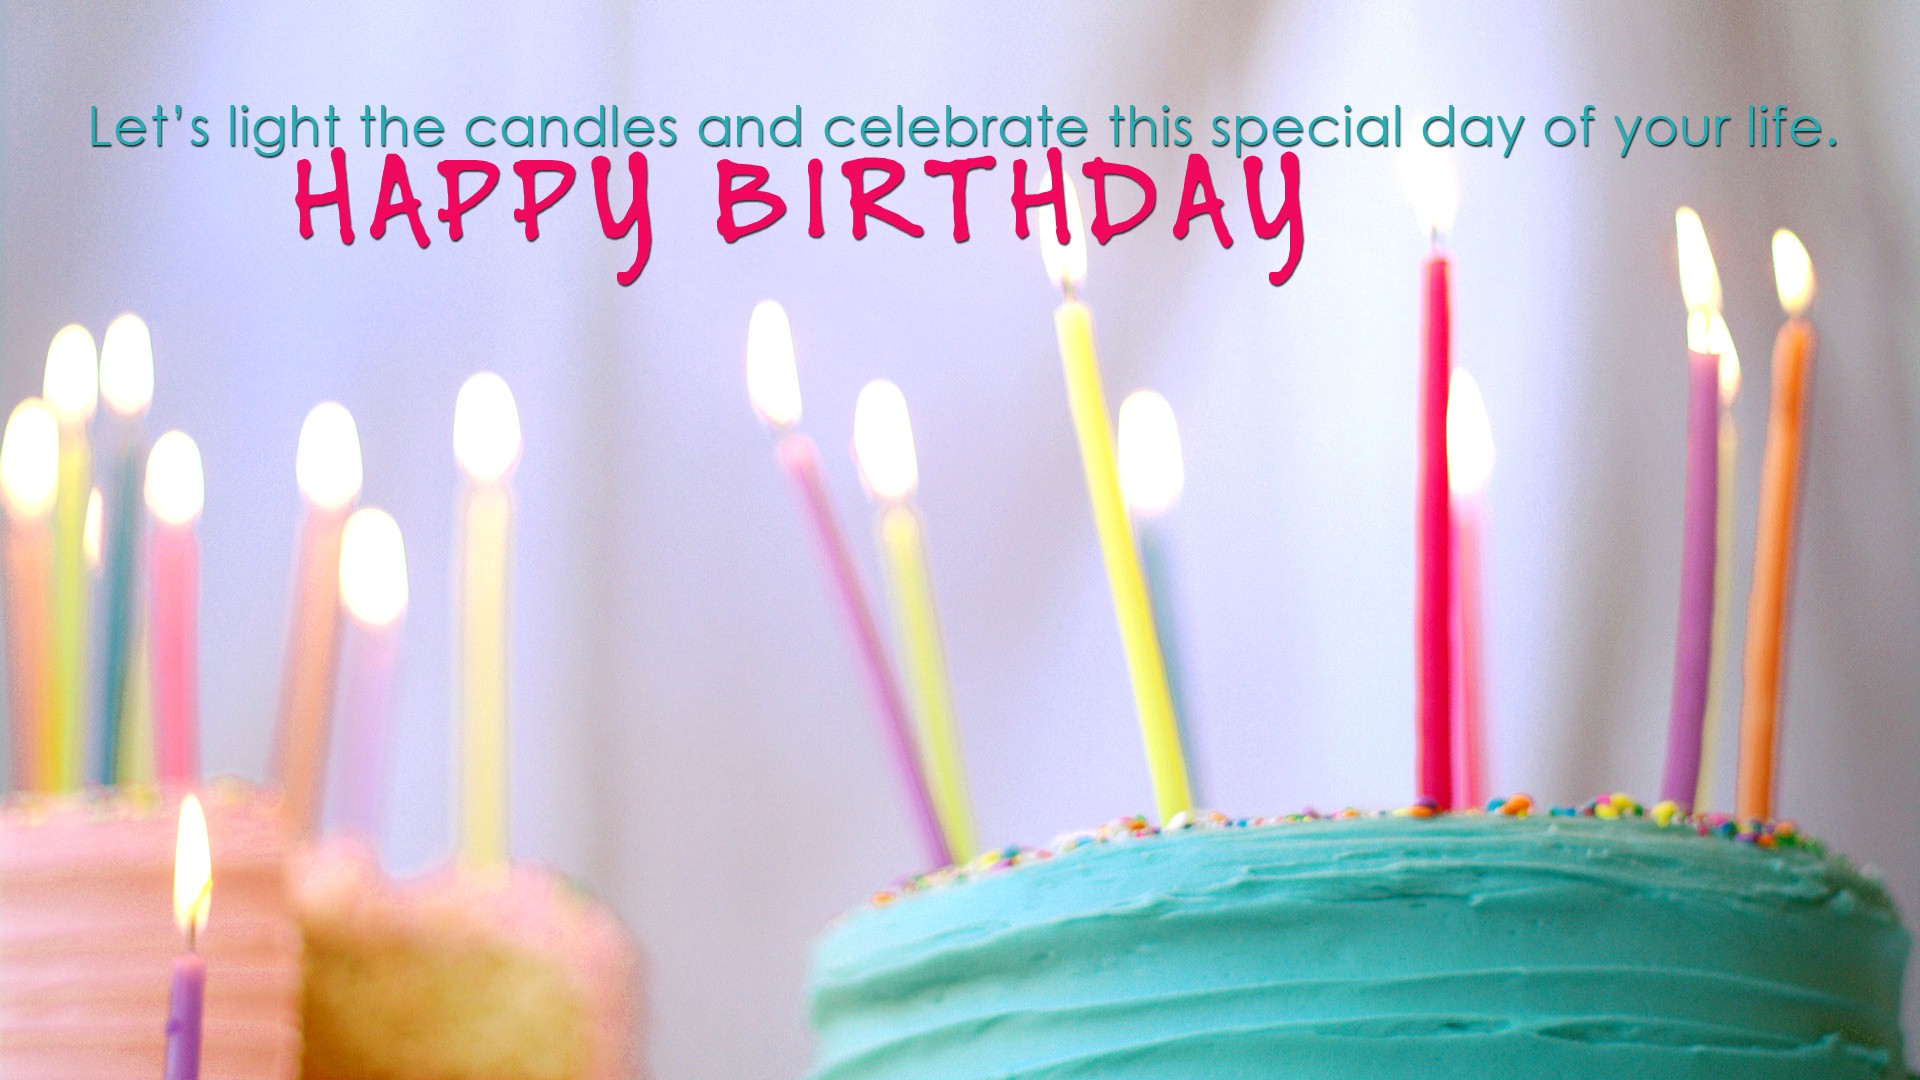 carta da parati di buon compleanno,torta,compleanno,torta di compleanno,buttercream,candela